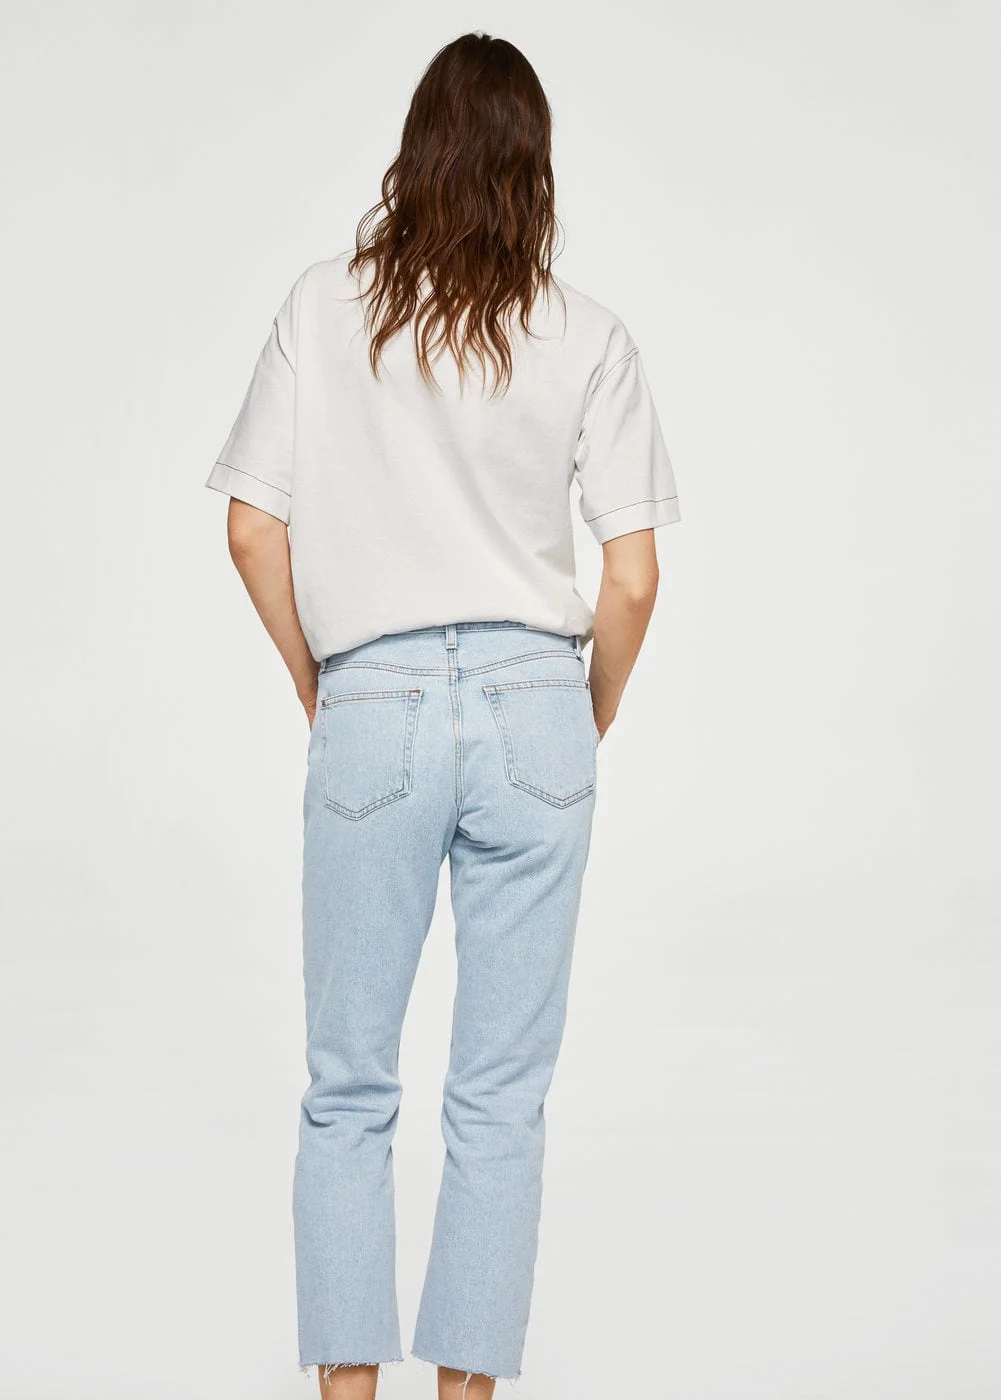 Ці джинси стануть головним хітом сезону і мають бути в кожної дівчини - фото 371568